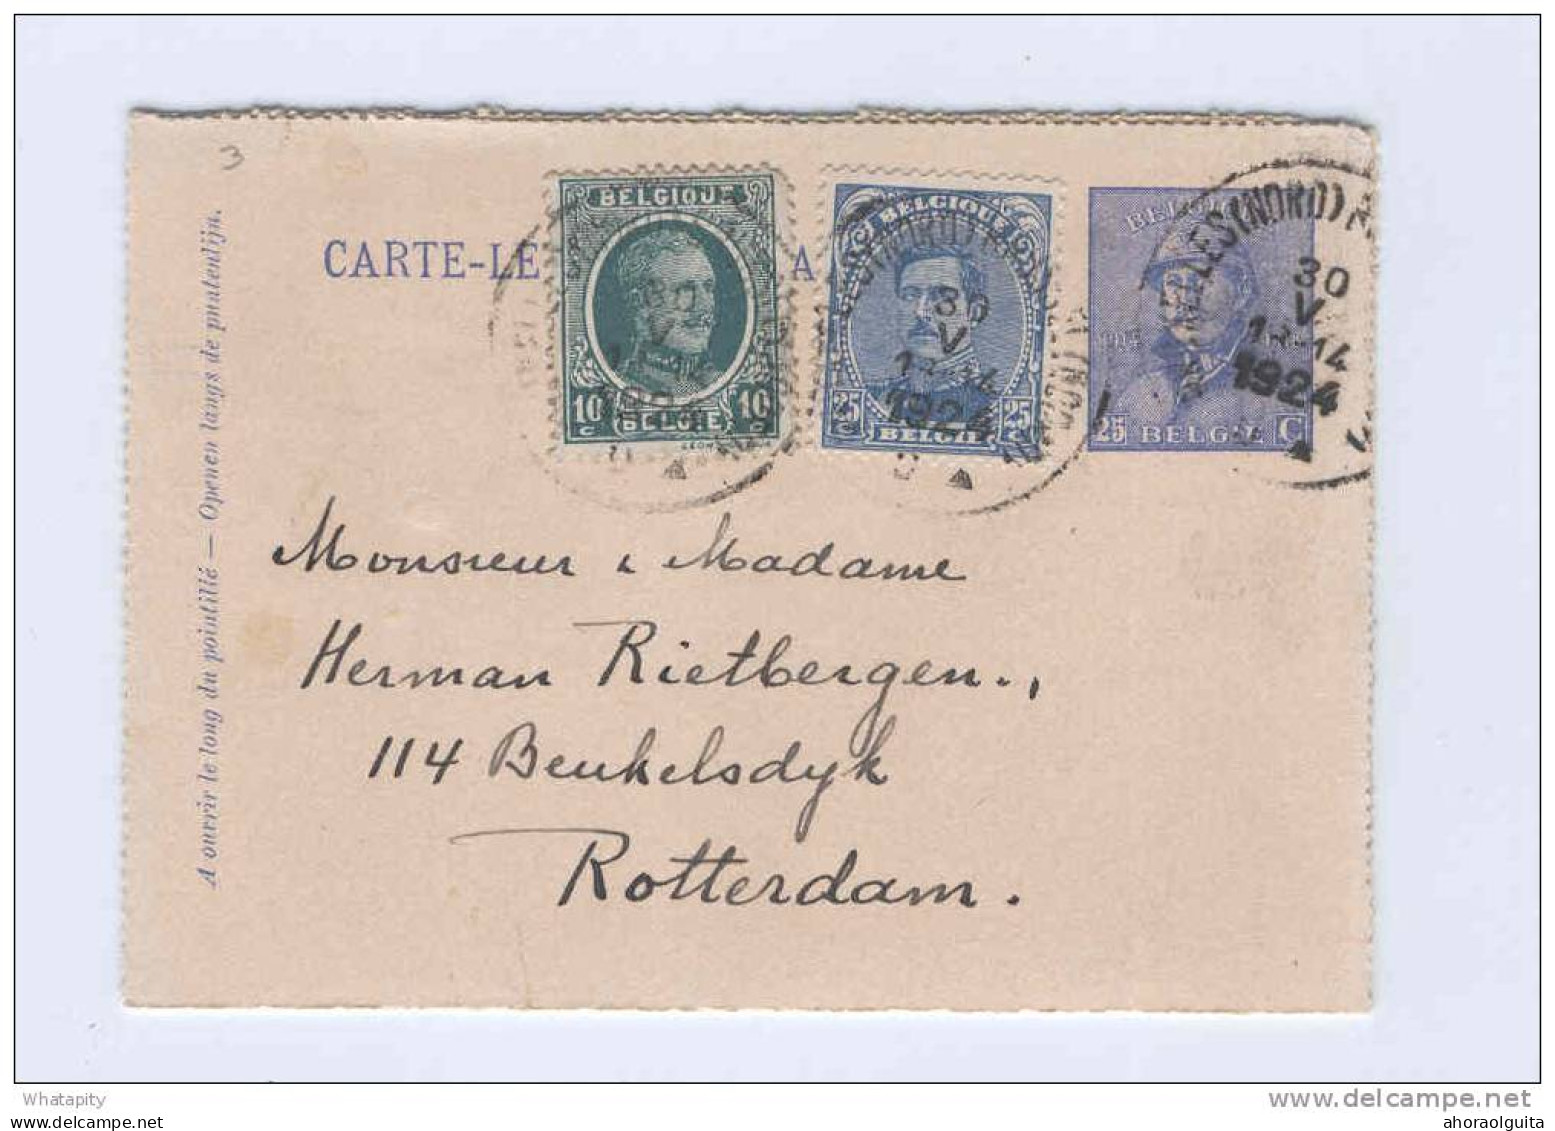 Carte-Lettre 3 Emissions - Casqué + Albert15 + Houyoux BRUXELLES 1924 Vers ROTTERDAM - TARIF PREFERENTIEL NL  -- B7/935 - Cartes-lettres